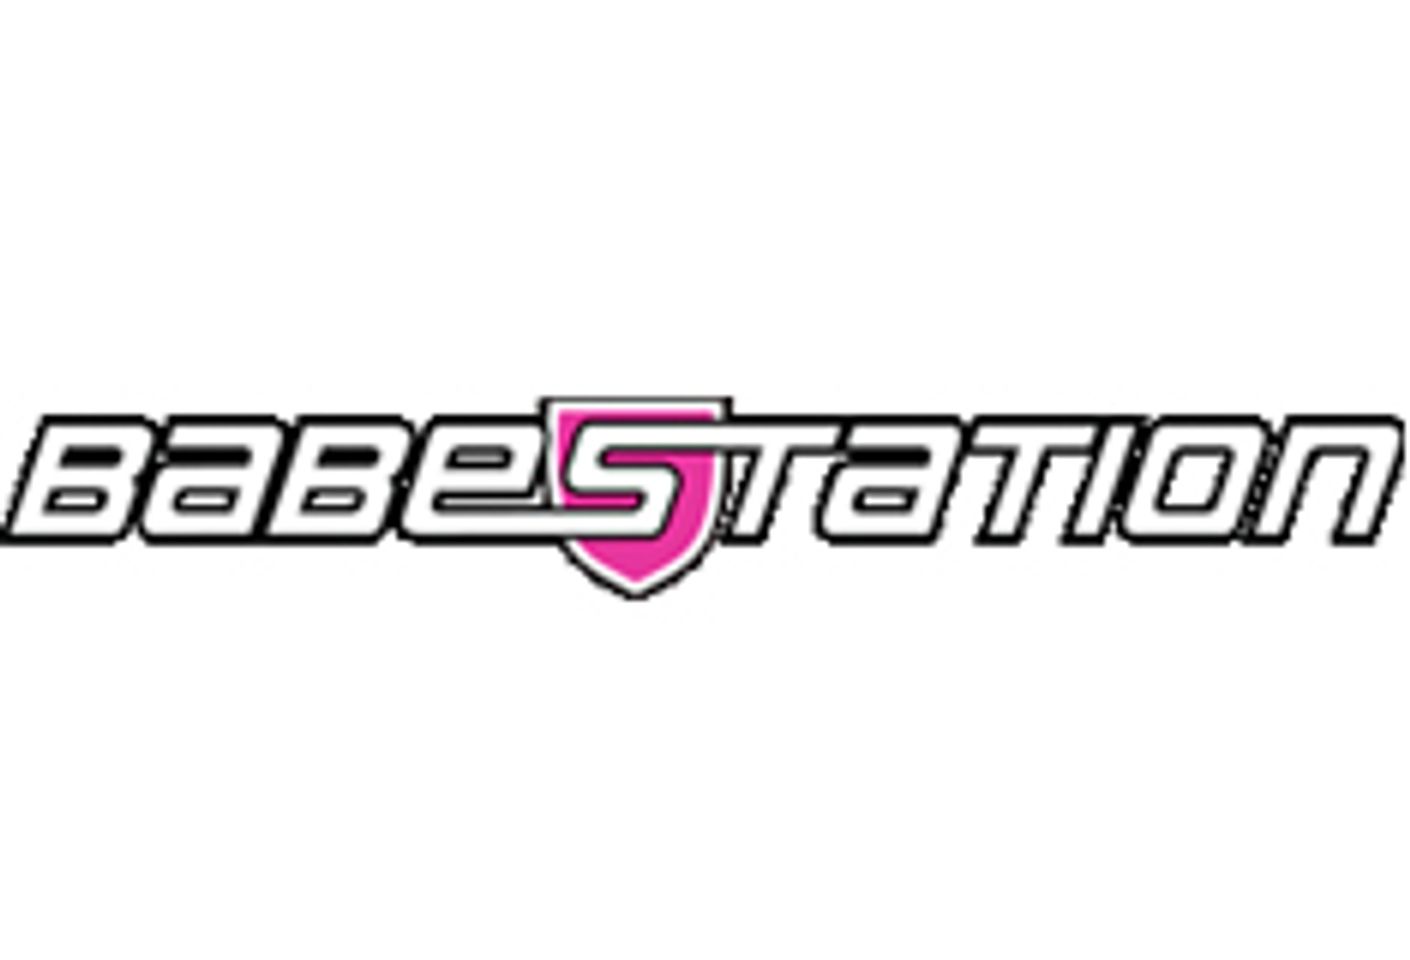 Babestation has Launched Babestation Latinas